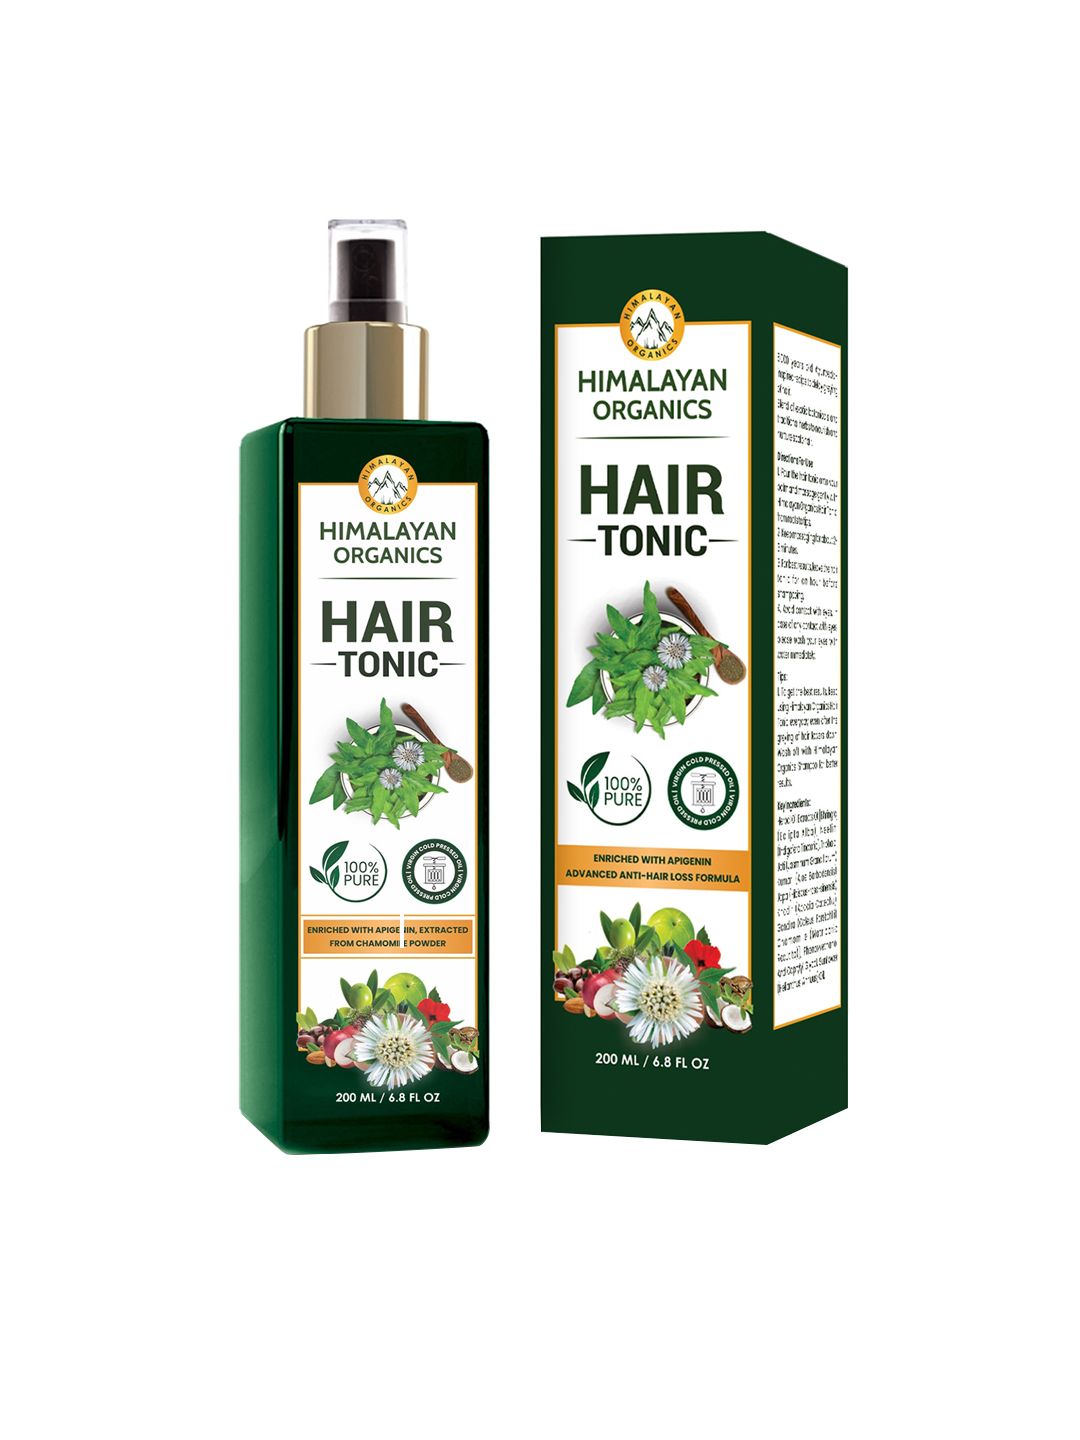 Himalayan Organics Hair Tonic - 200 ml Price in India